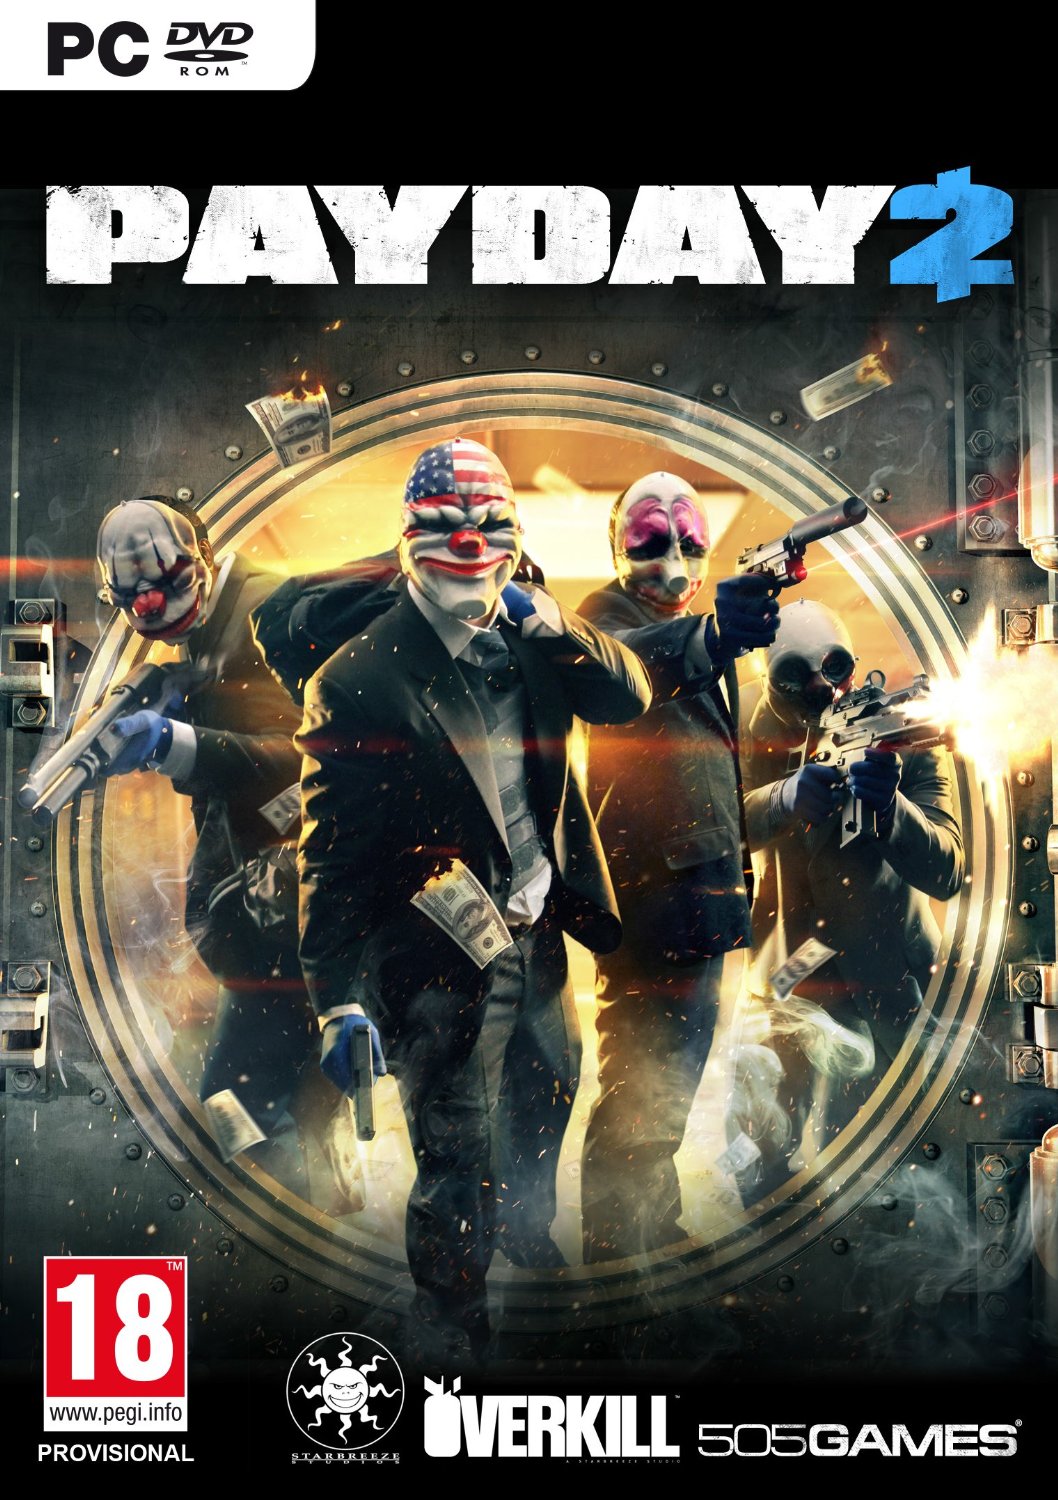 Crack/Таблетка для Payday 2 fix (играем по сети)